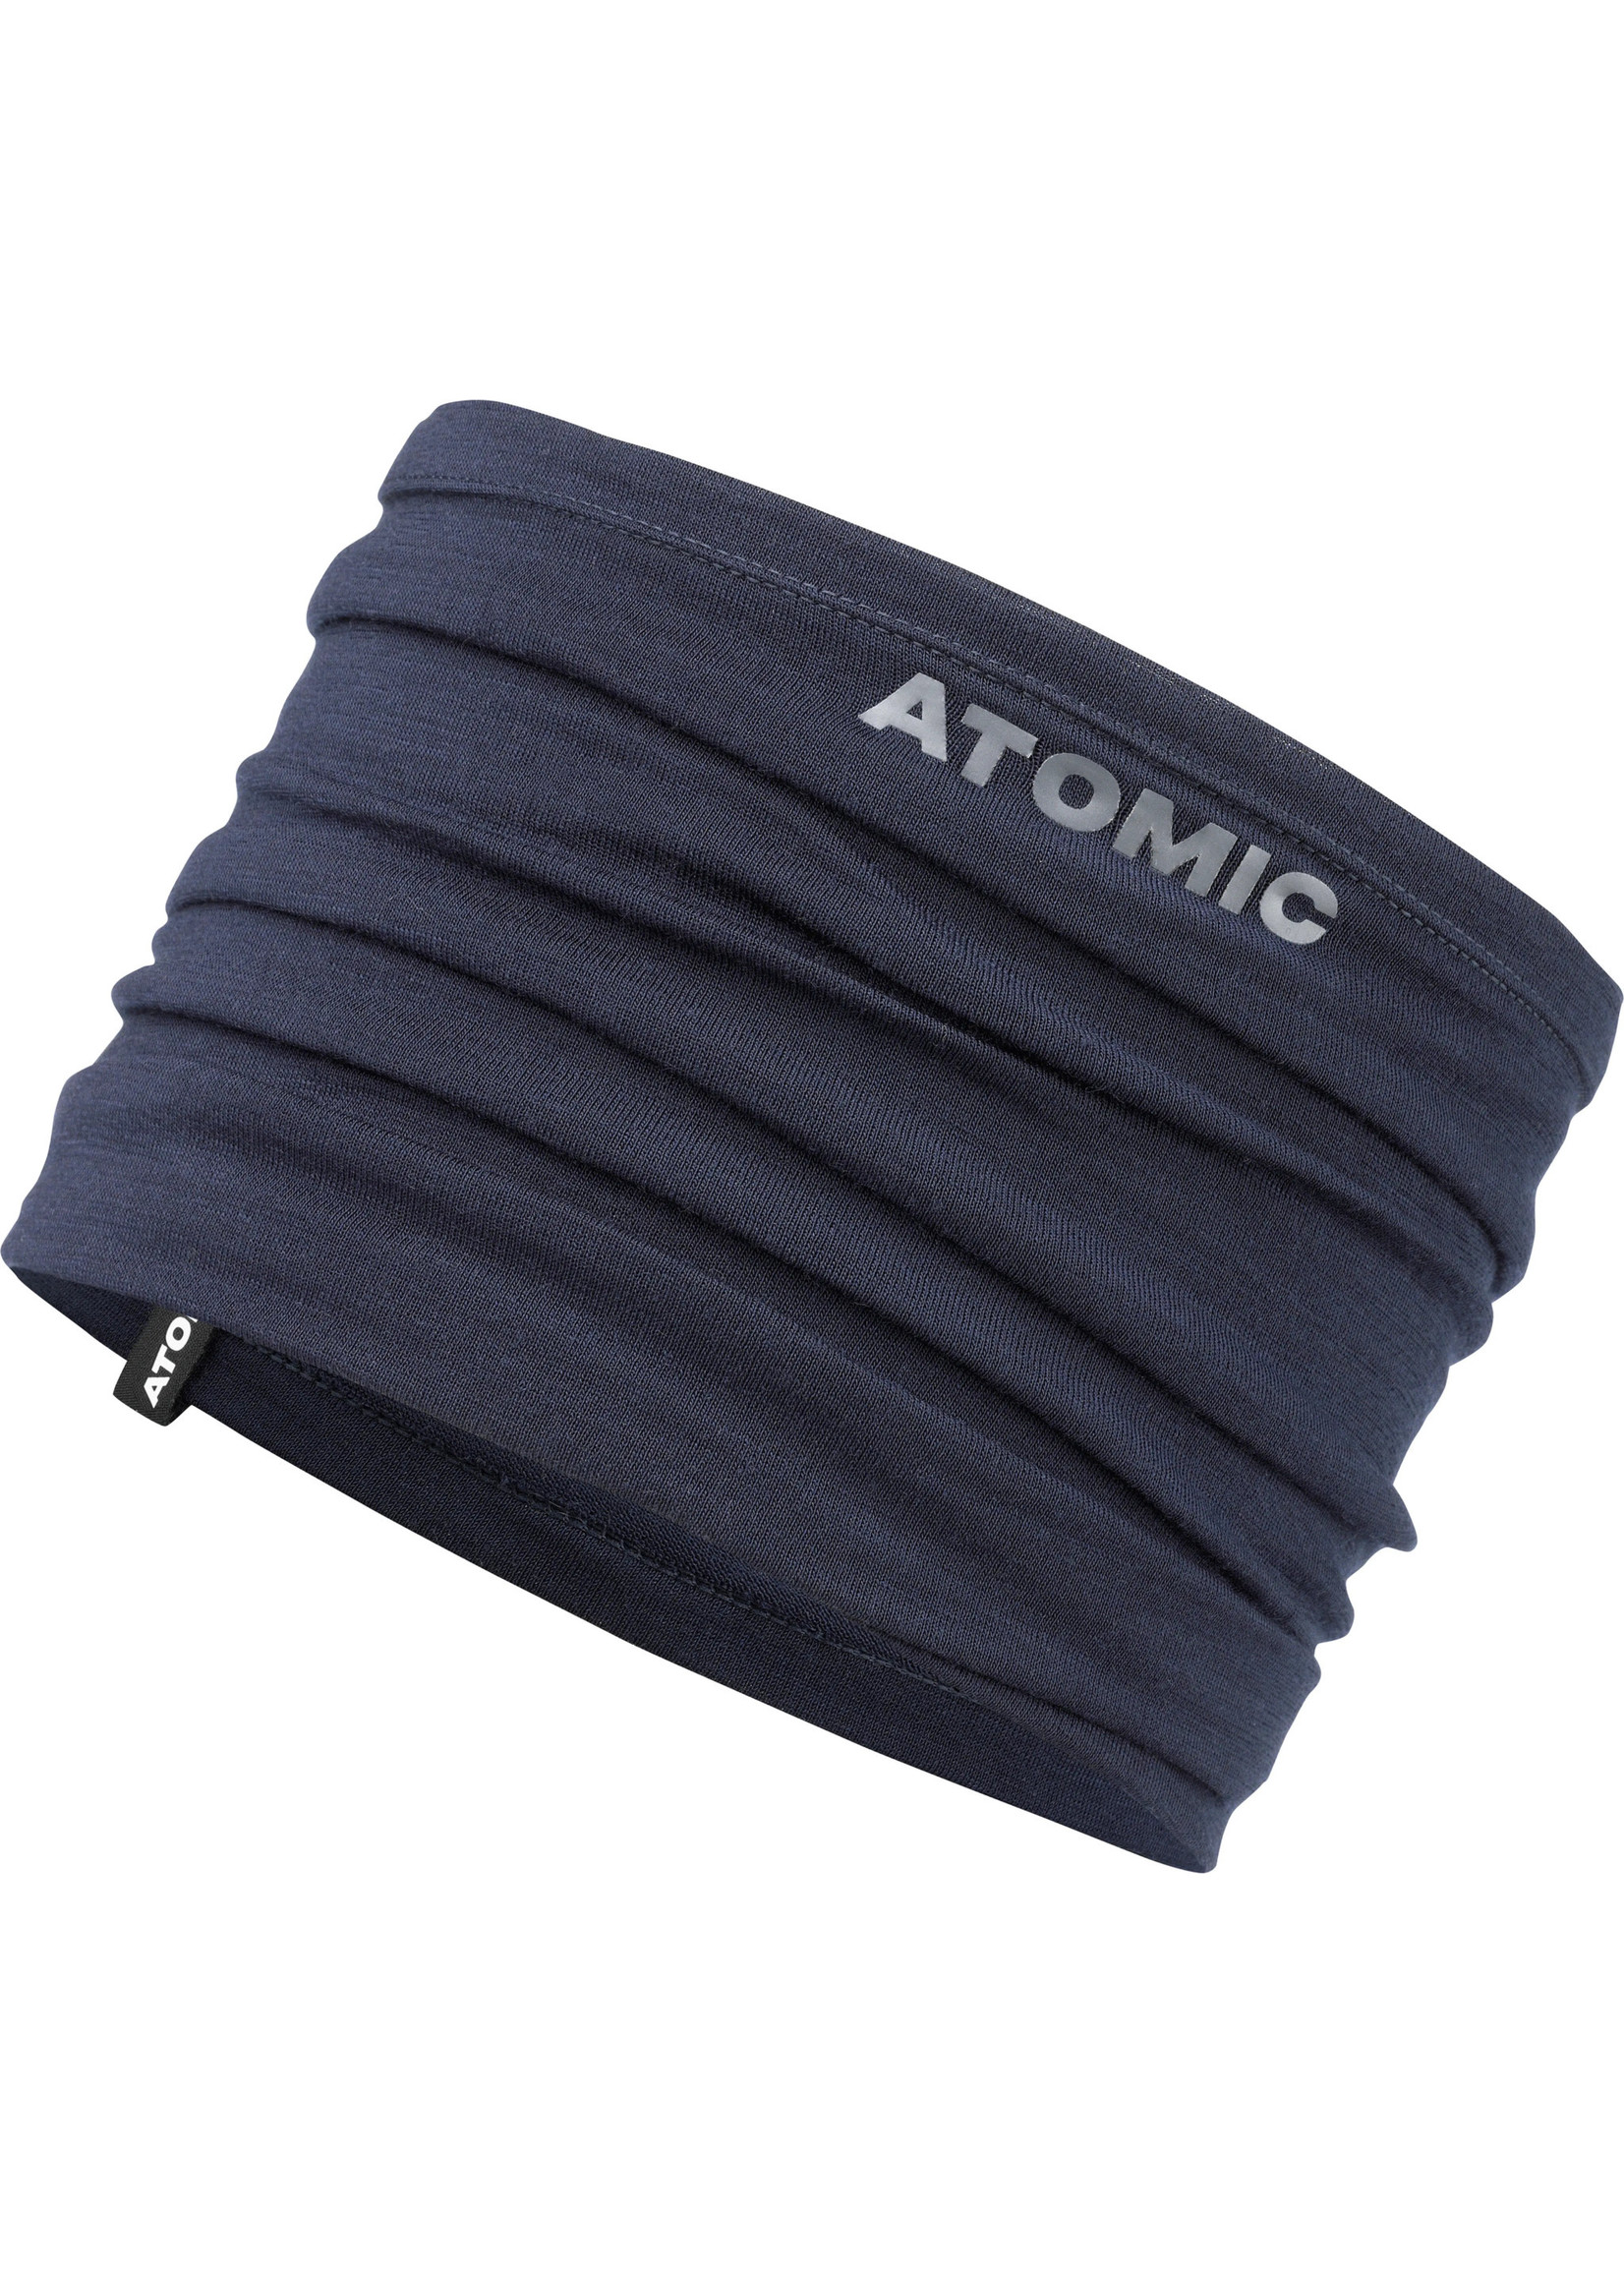 Atomic Cache-cou Alps Neckwarmer